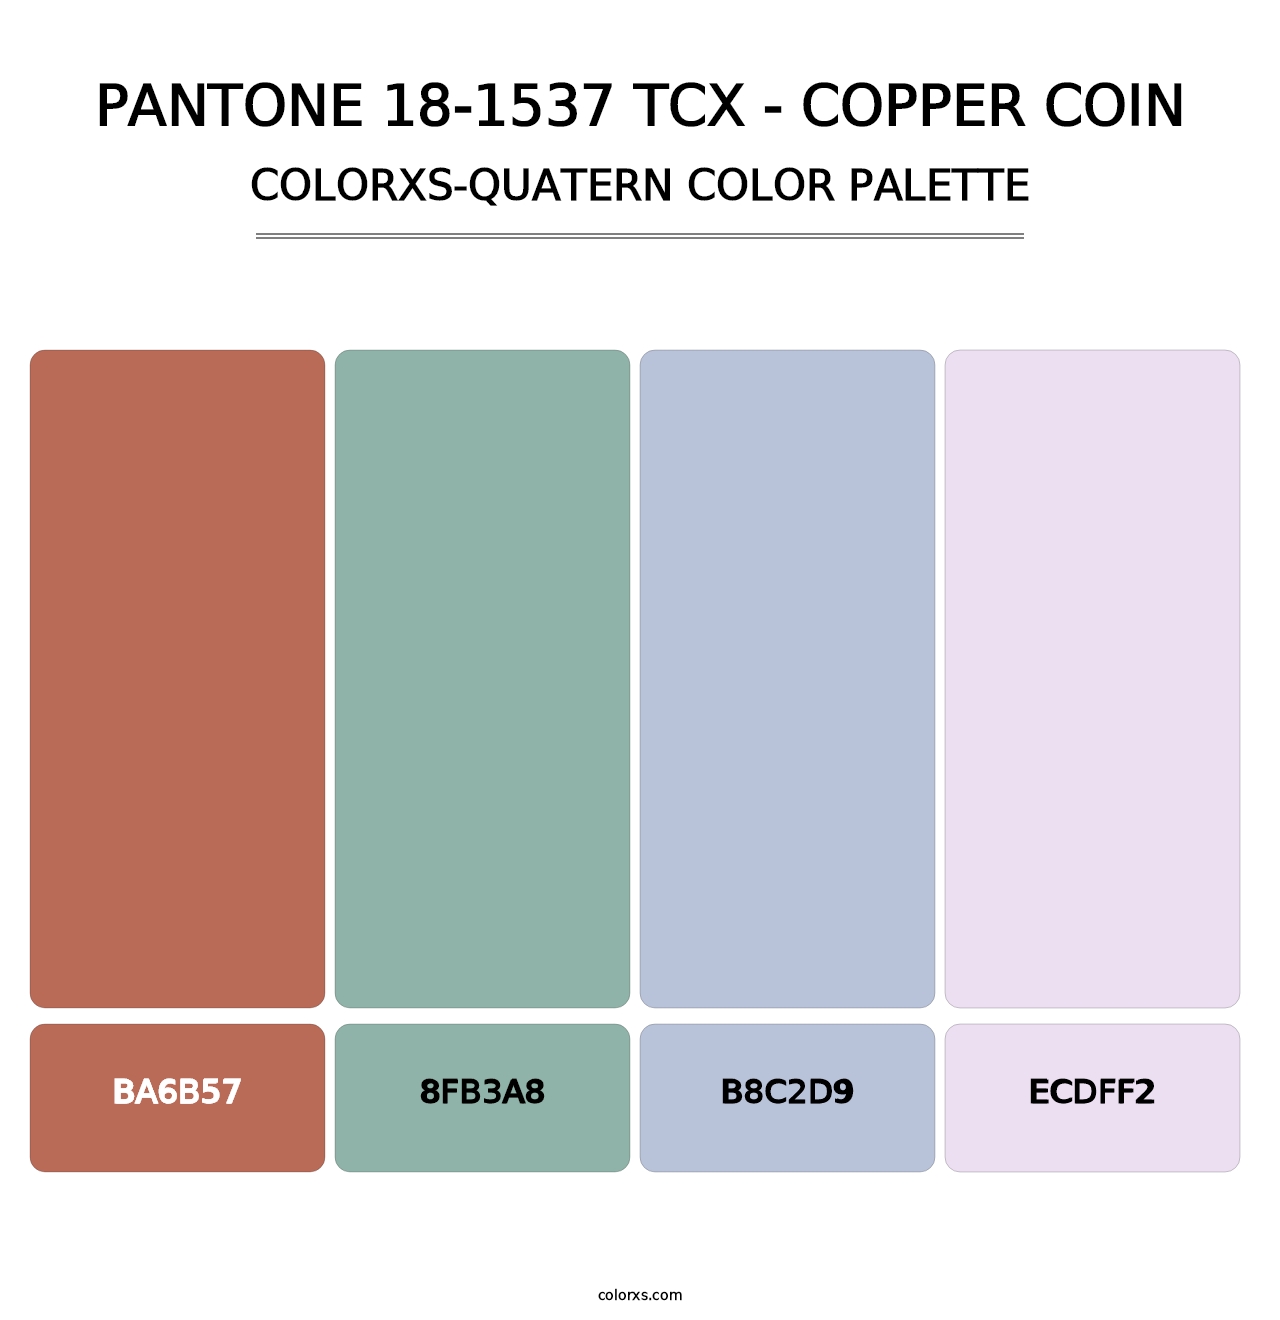 PANTONE 18-1537 TCX - Copper Coin - Colorxs Quatern Palette